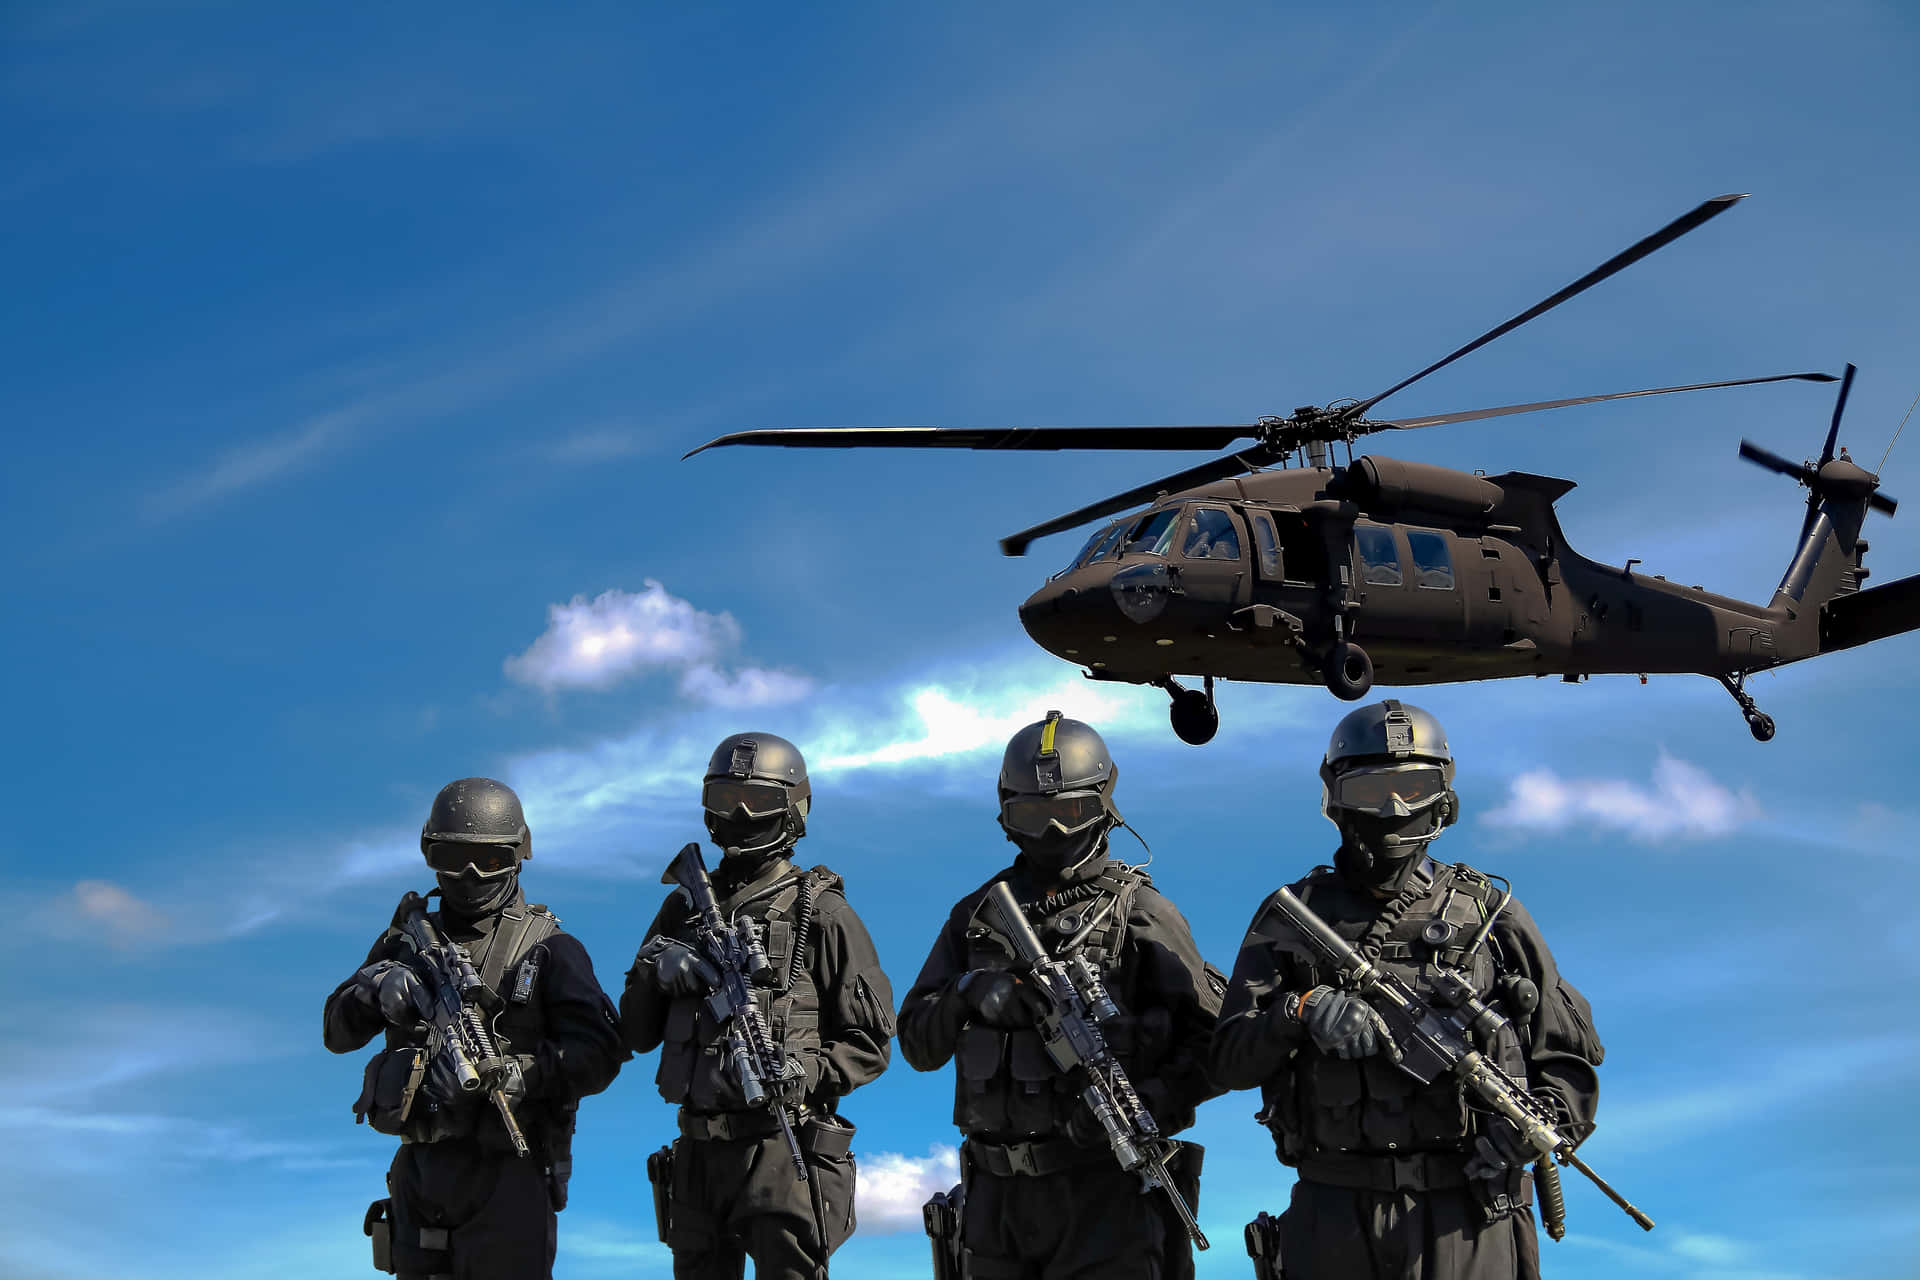 En gruppe af soldater, der står foran en helikopter